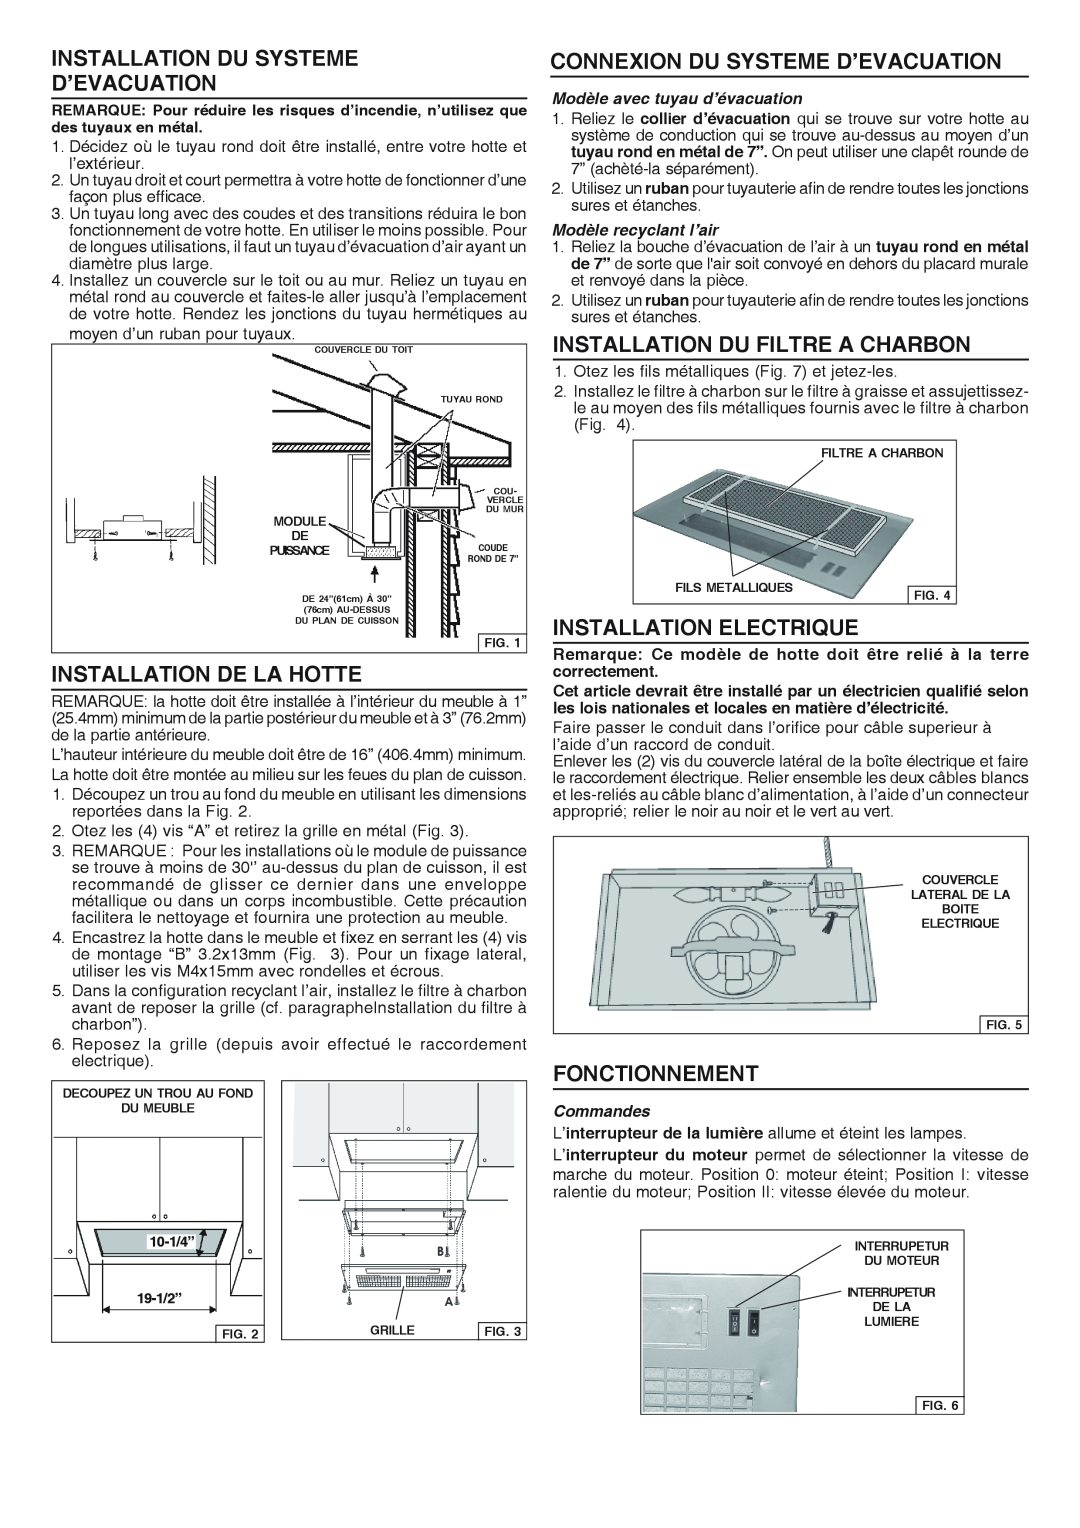 Broan RHVBB20SM manual Installation Du Systeme D’Evacuation, Installation De La Hotte, Connexion Du Systeme D’Evacuation 